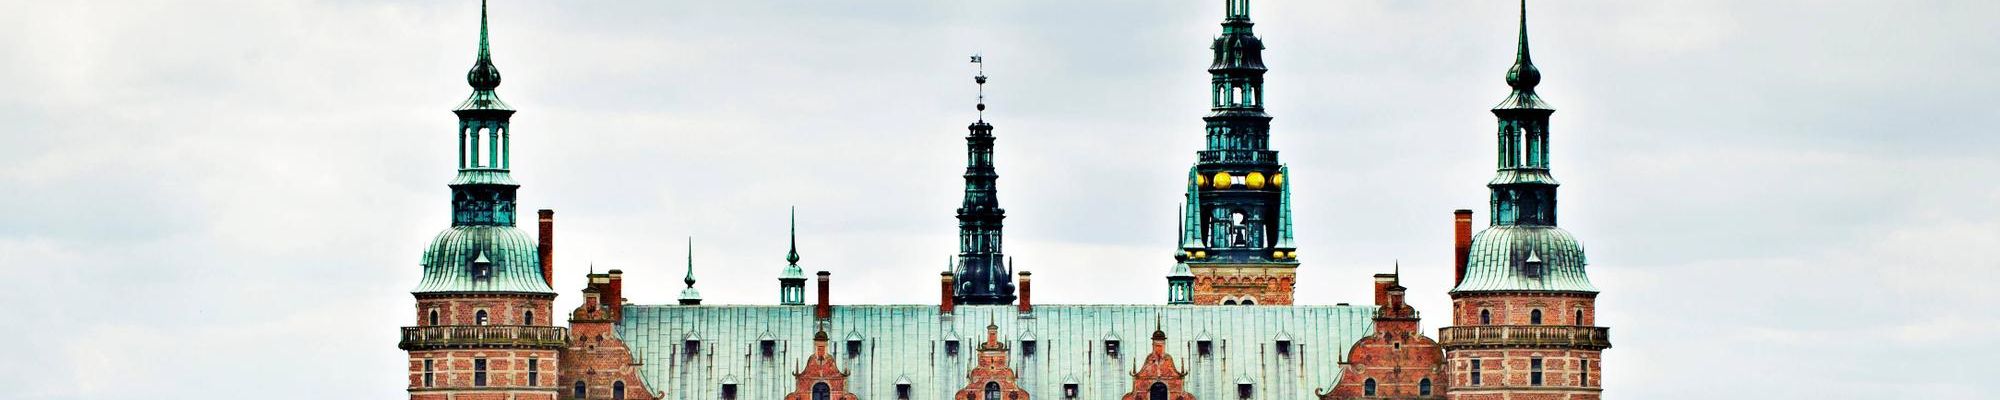 Museo Nacional de Historia - Palacio de Frederiksborg